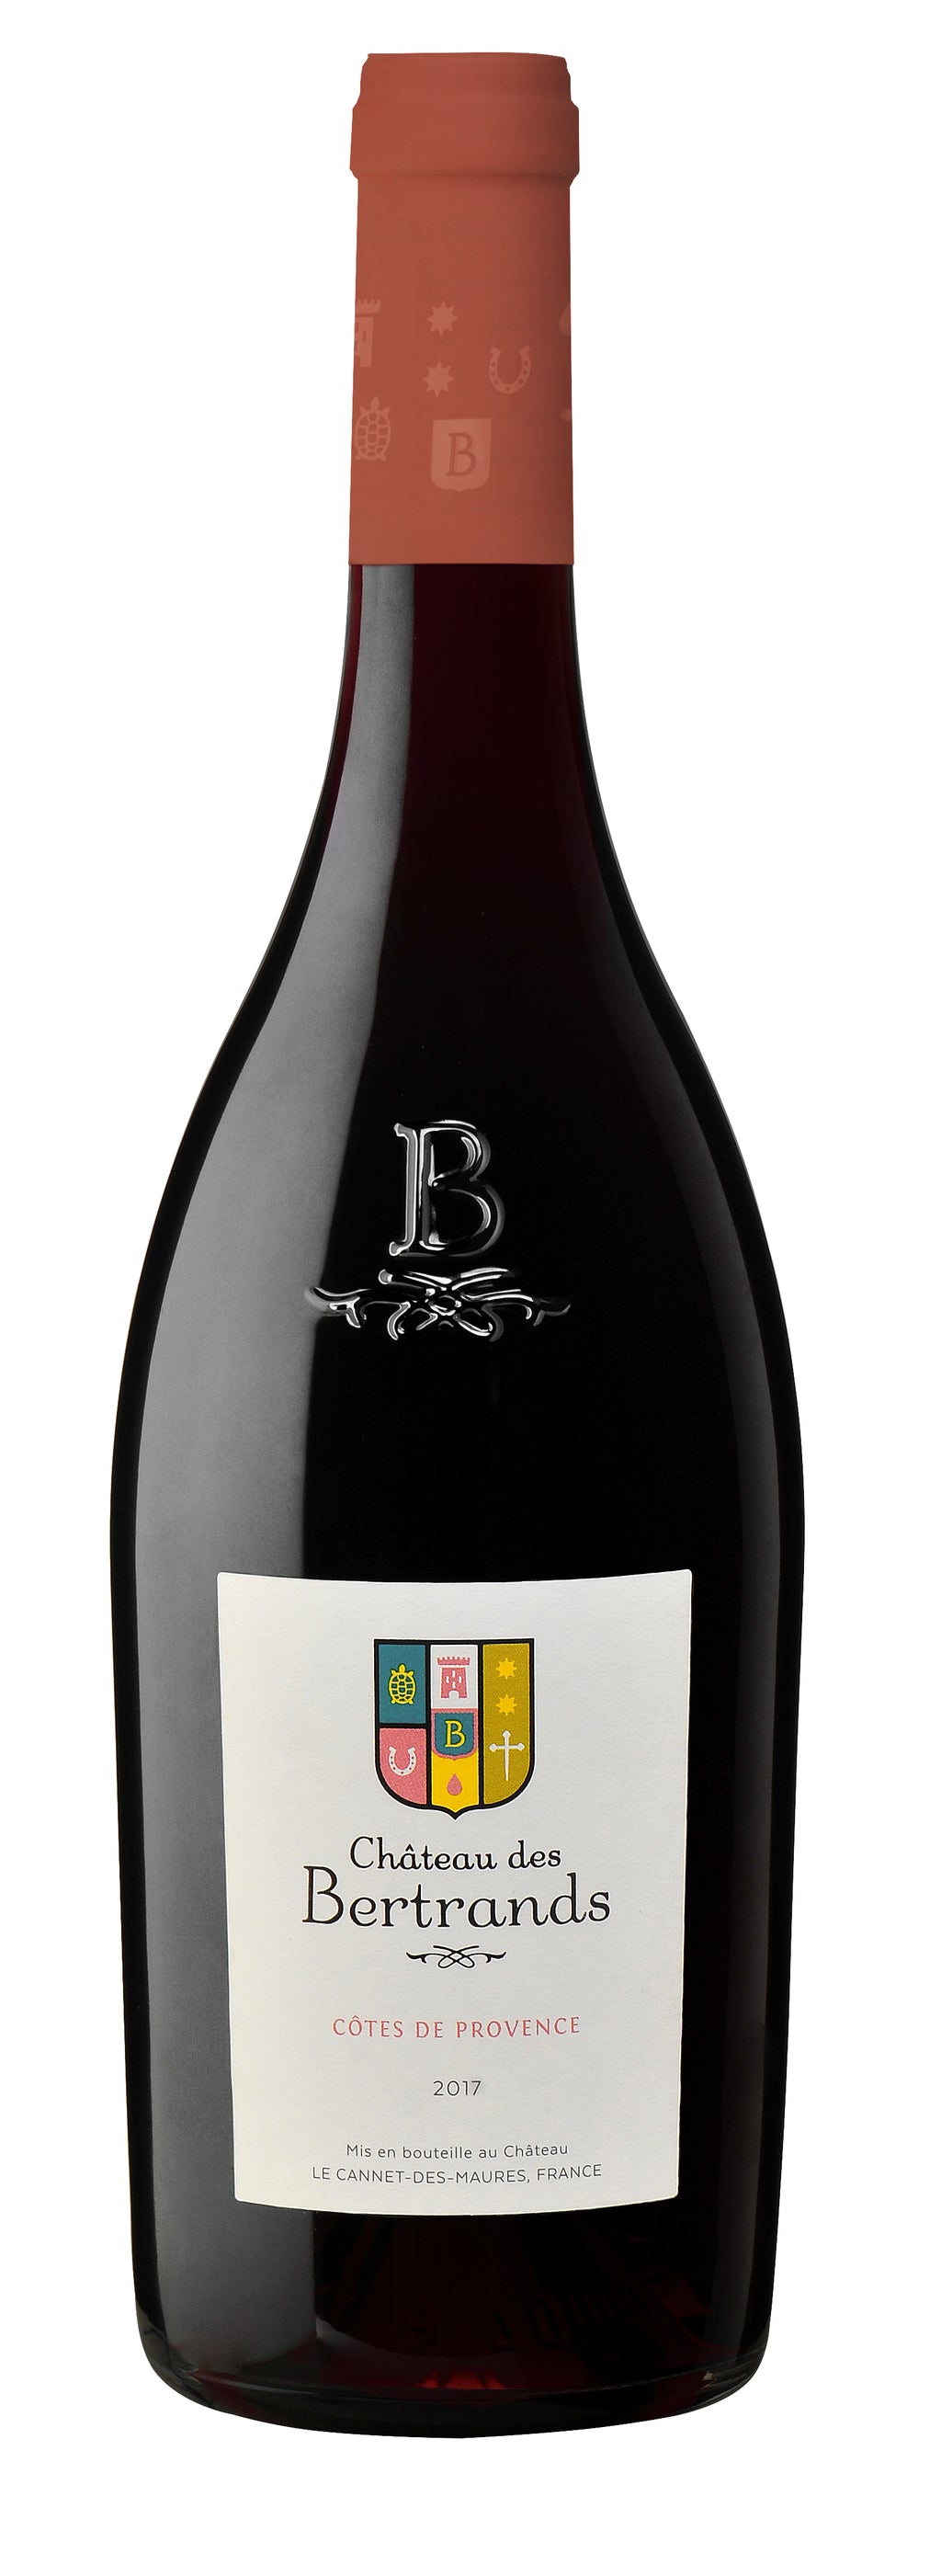 Image de la bouteille "Château des Bertrands" rouge 2017